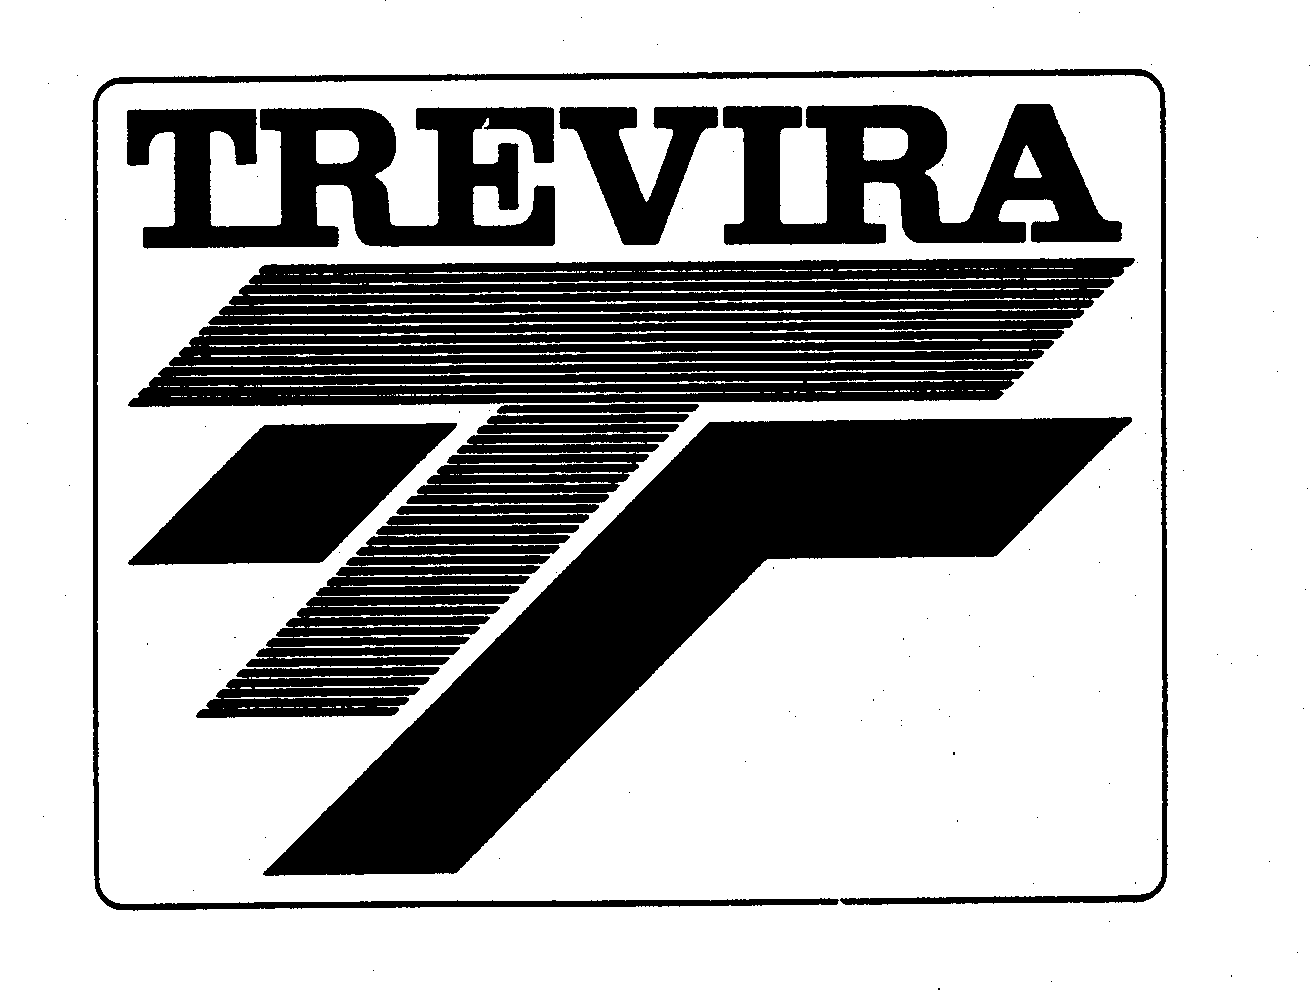  TREVIRA TT